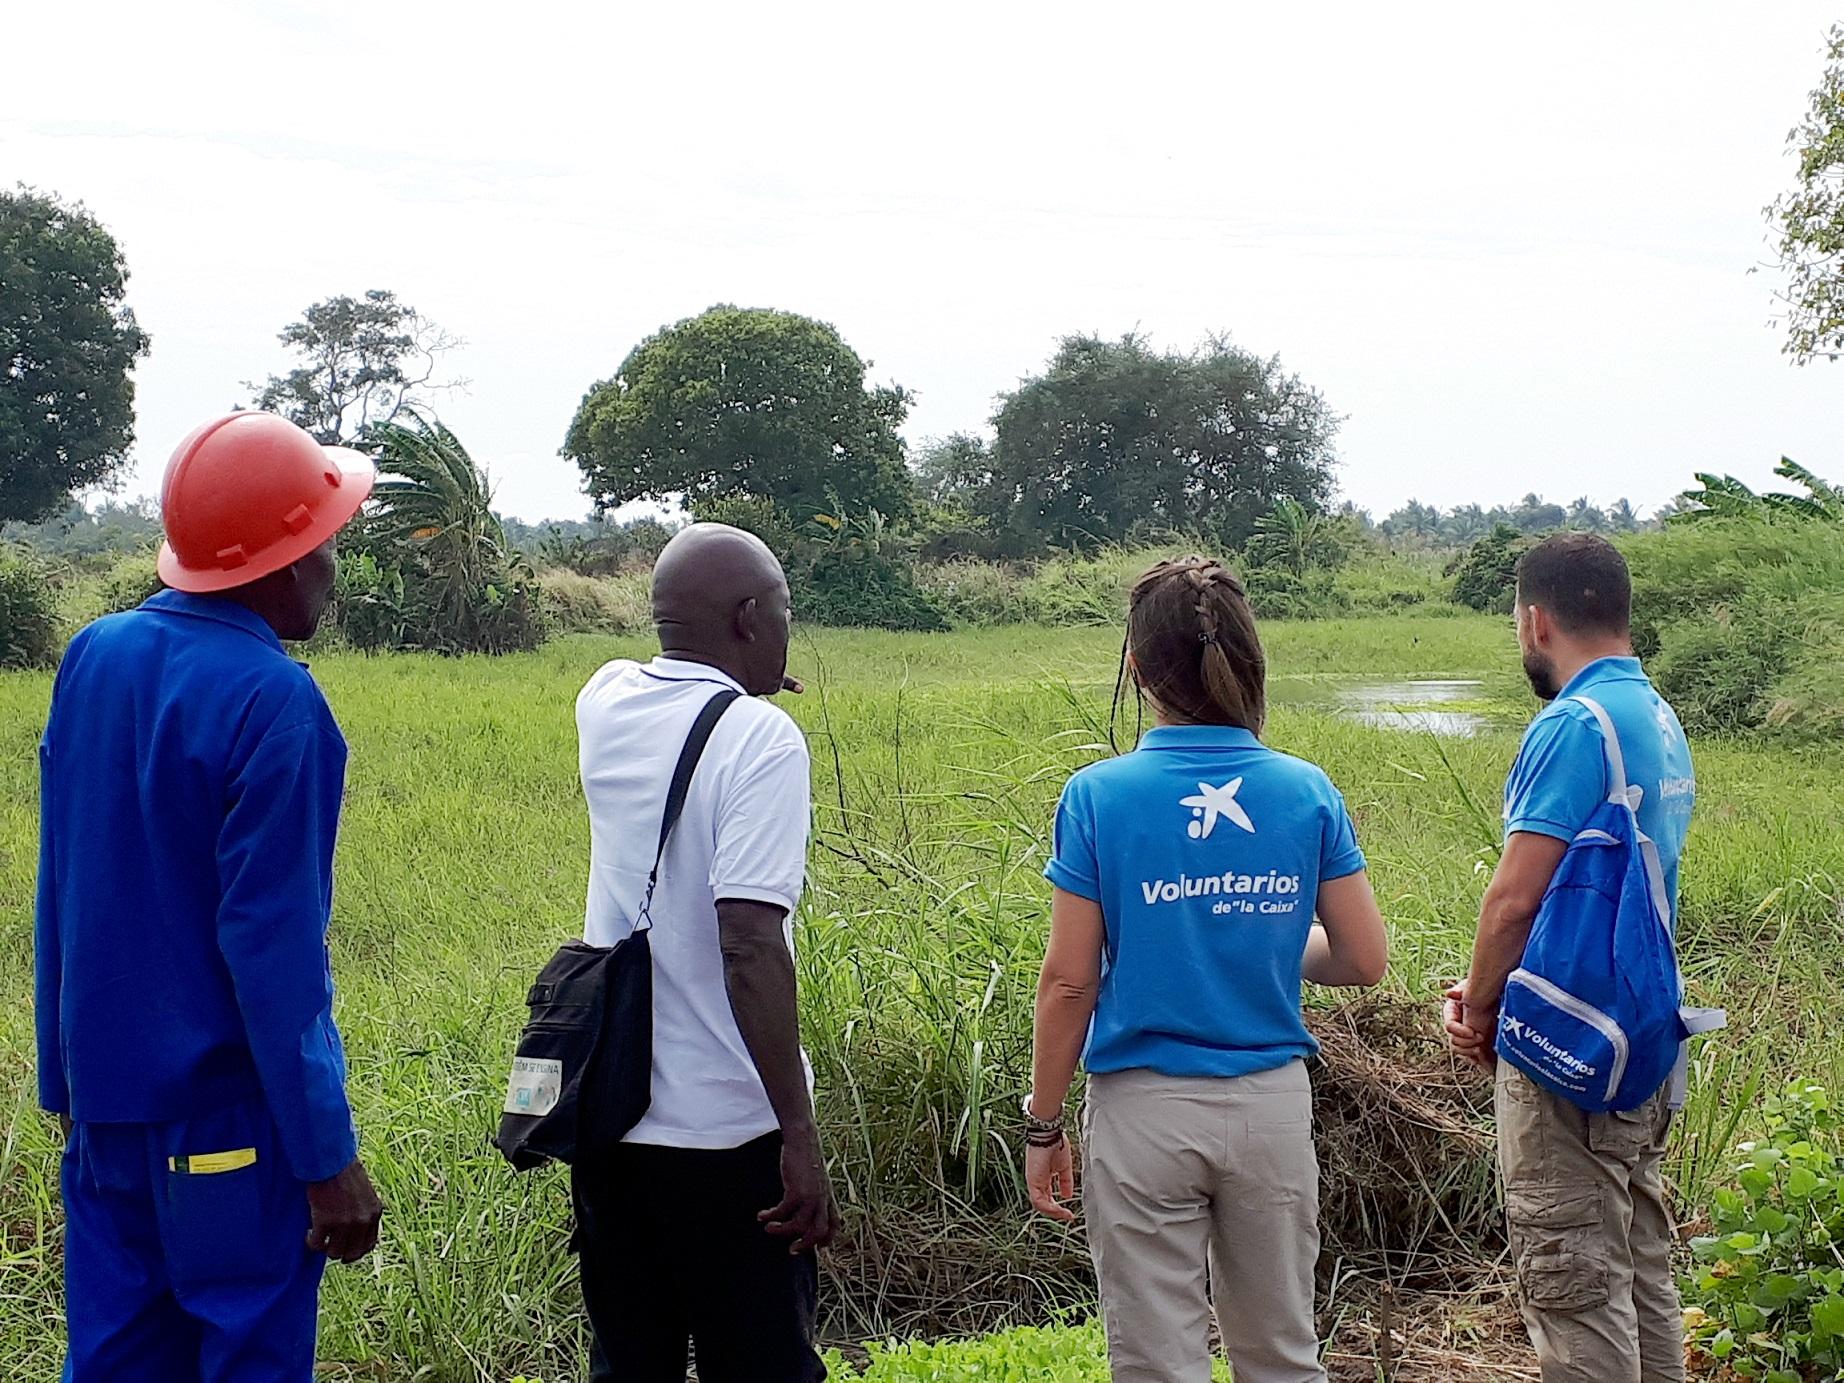 Voluntarios de CooperantesCaixa en Mozambique, donde participan en proyectos de cooperación internacional con ONG locales